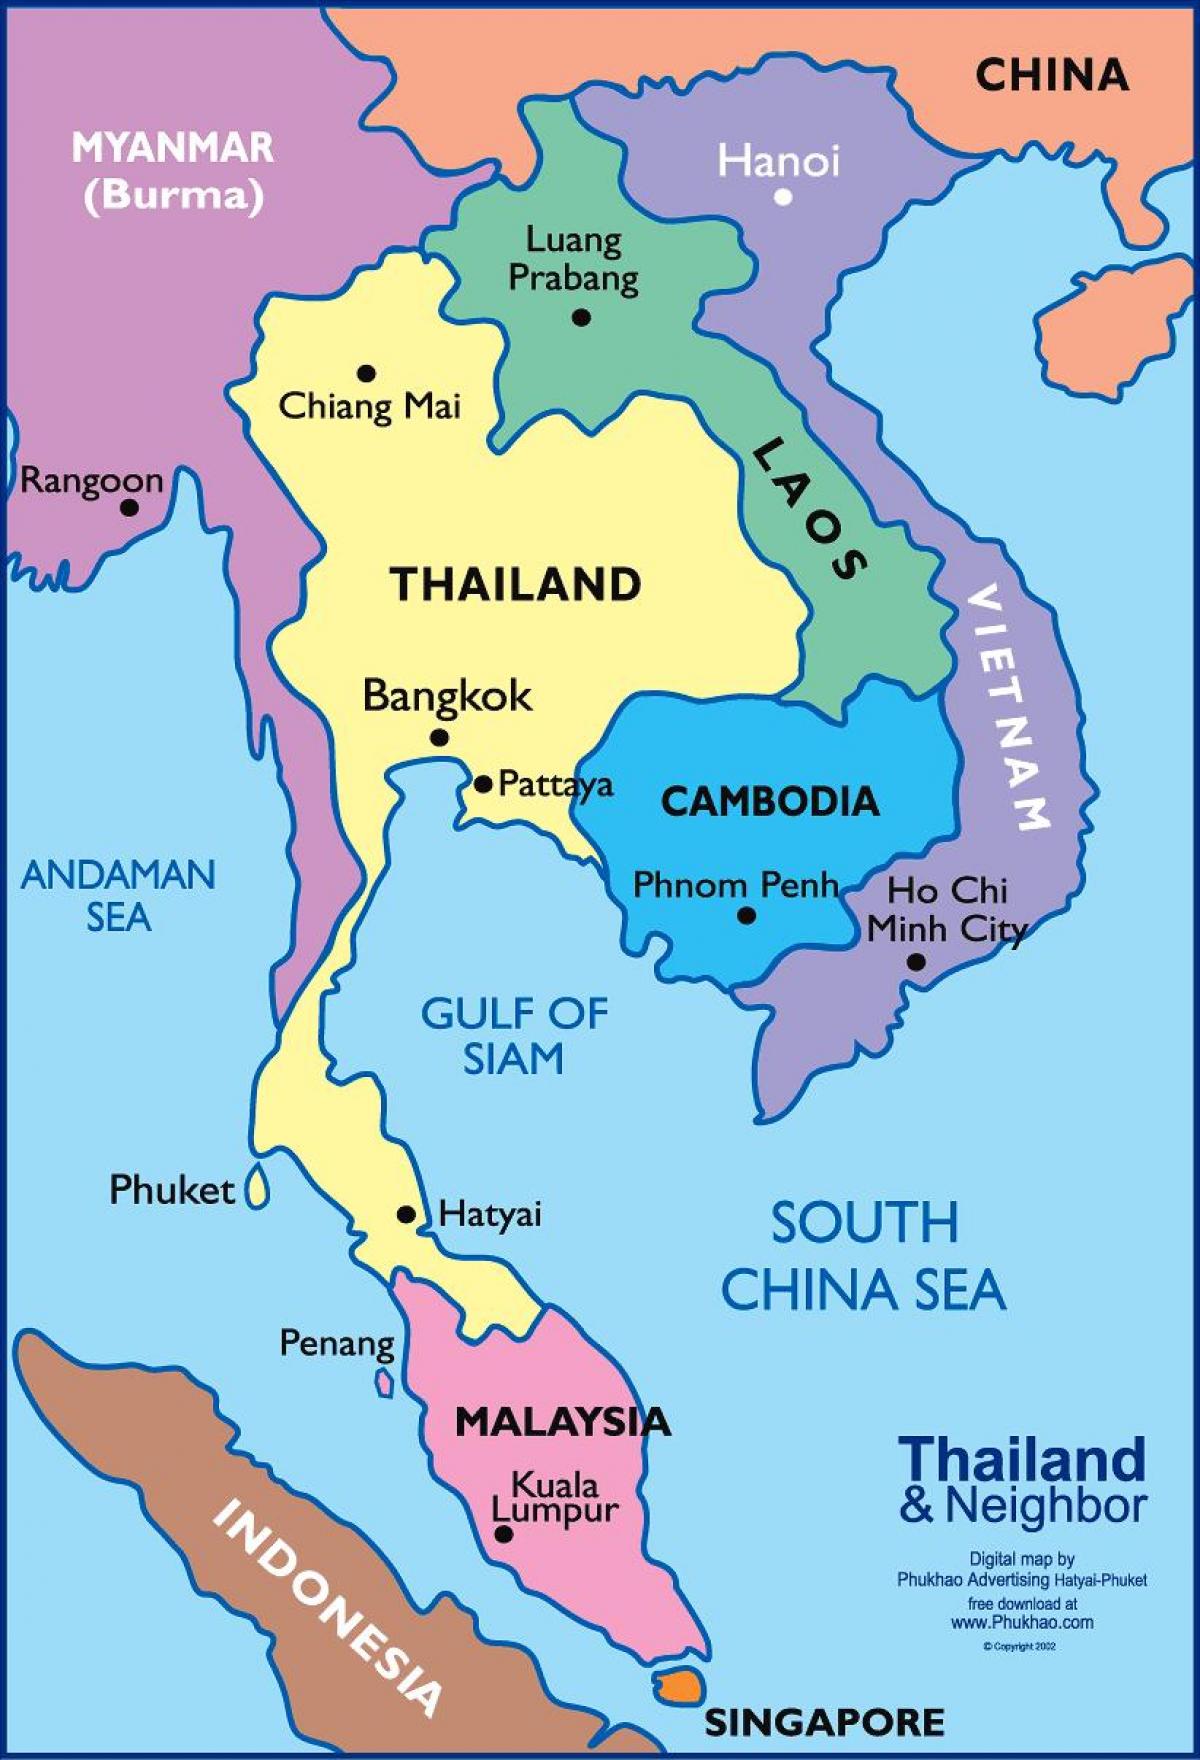 خريطة بانكوك الموقع